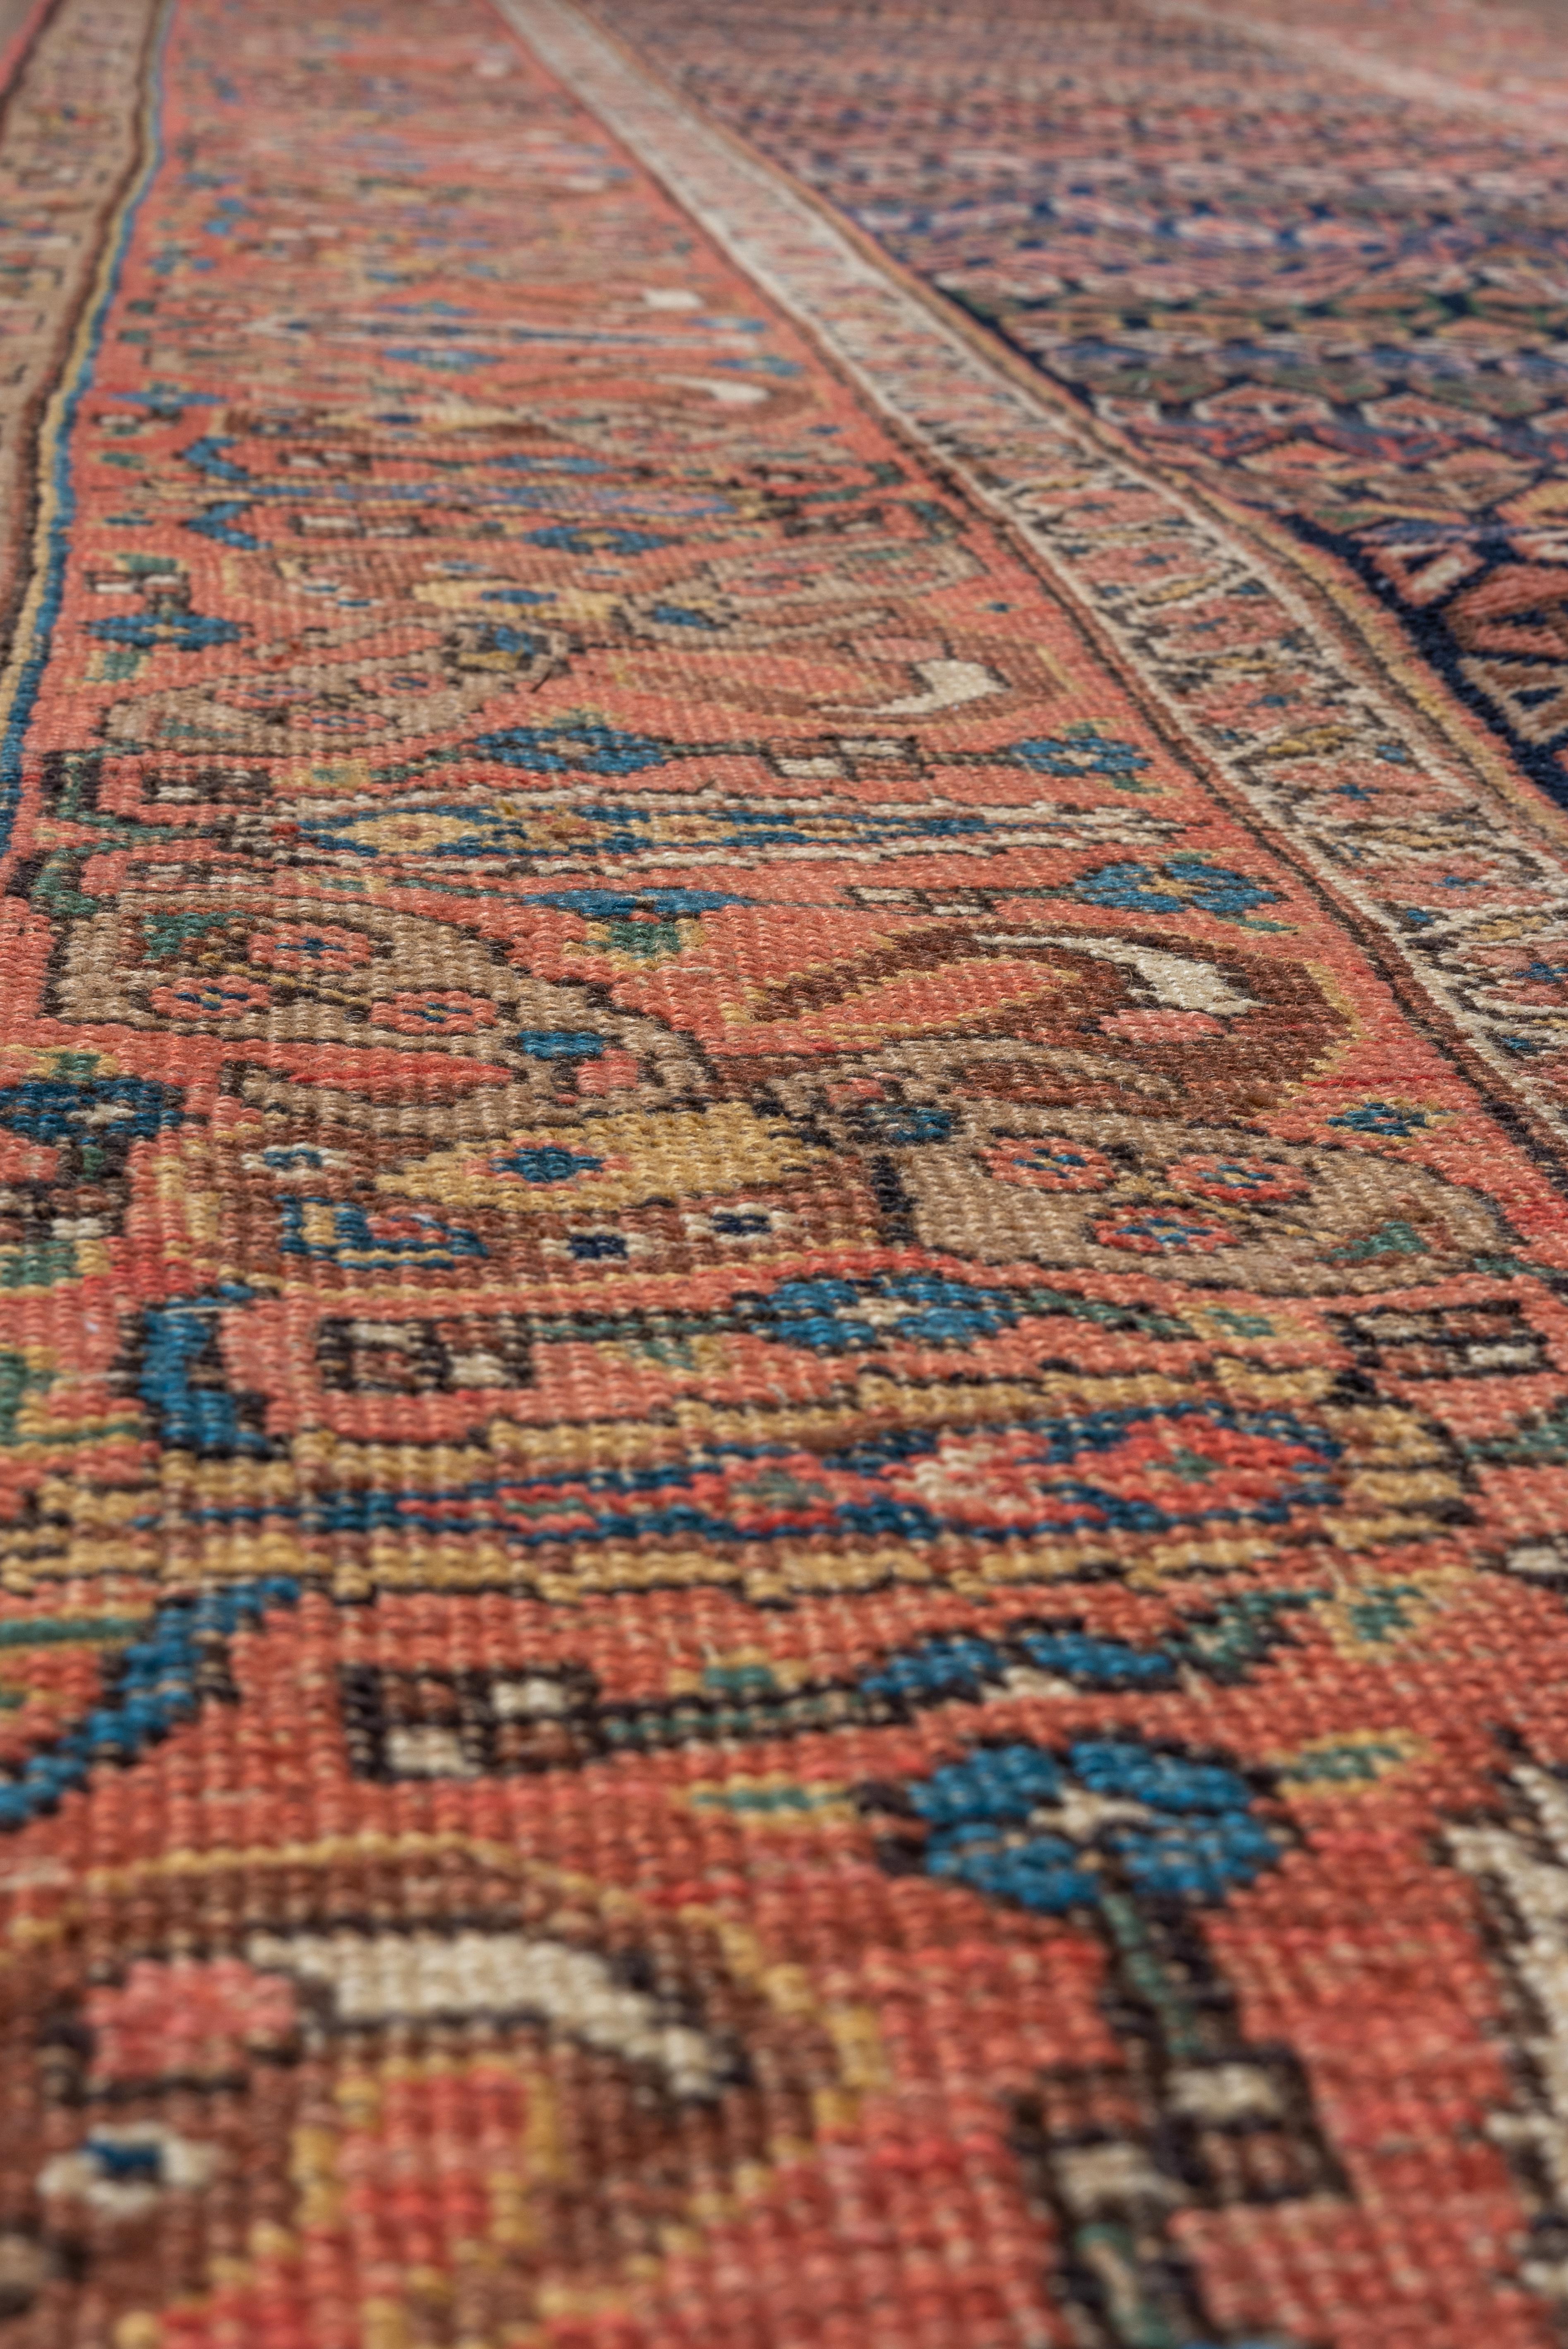 Les tapis Bidjar, également connus sous le nom de tapis Bijar, sont un type de tapis tissé à la main originaire de la ville de Townes, dans la région du Kurdistan iranien. Ils sont très appréciés pour leur durabilité exceptionnelle, leurs poils